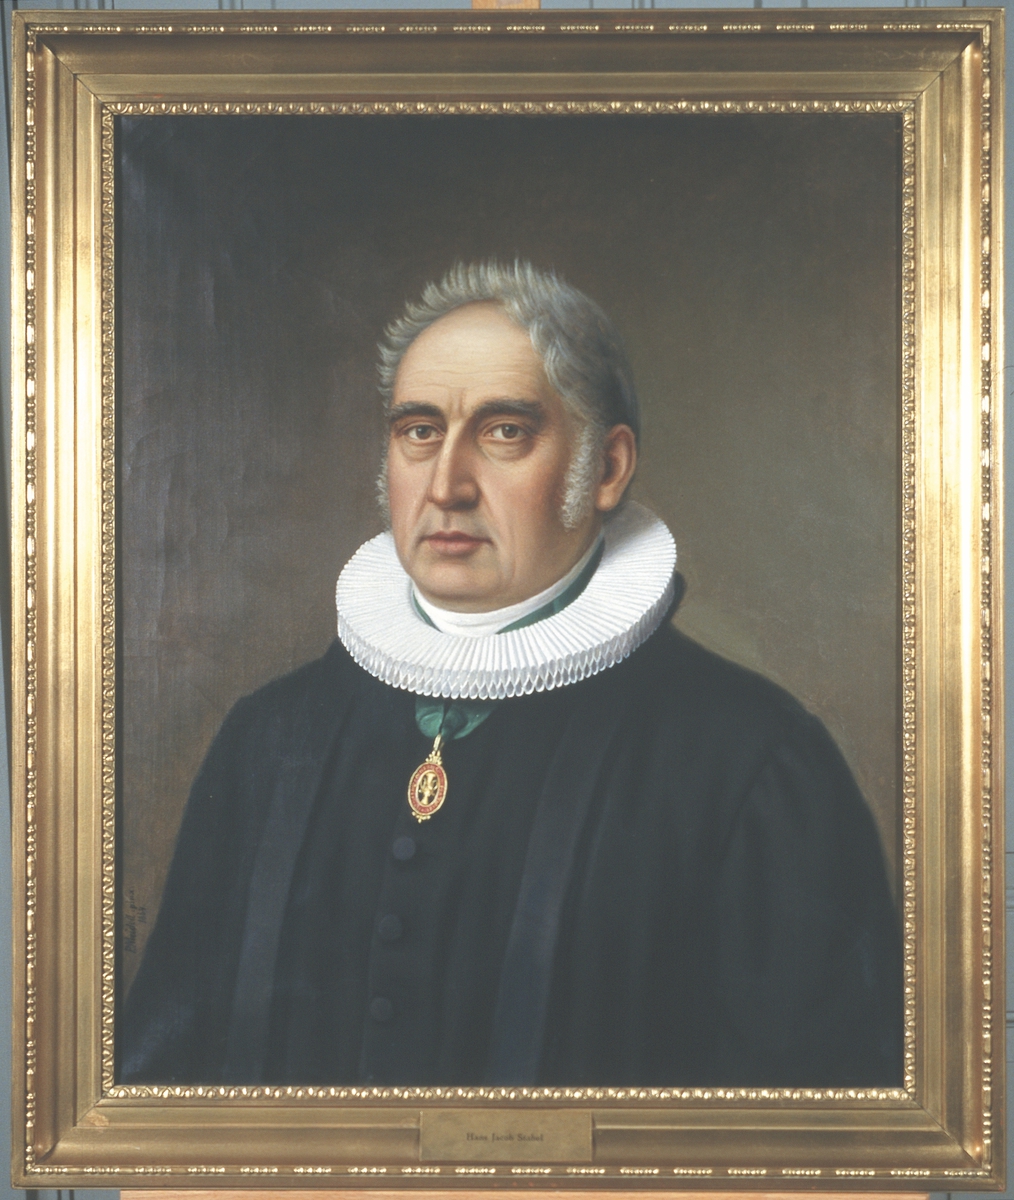 Portrett av Hans Jacob Stabel. Prestekjole og pipekrave. Medalje eller orden i grønt bånd rundt halsen.